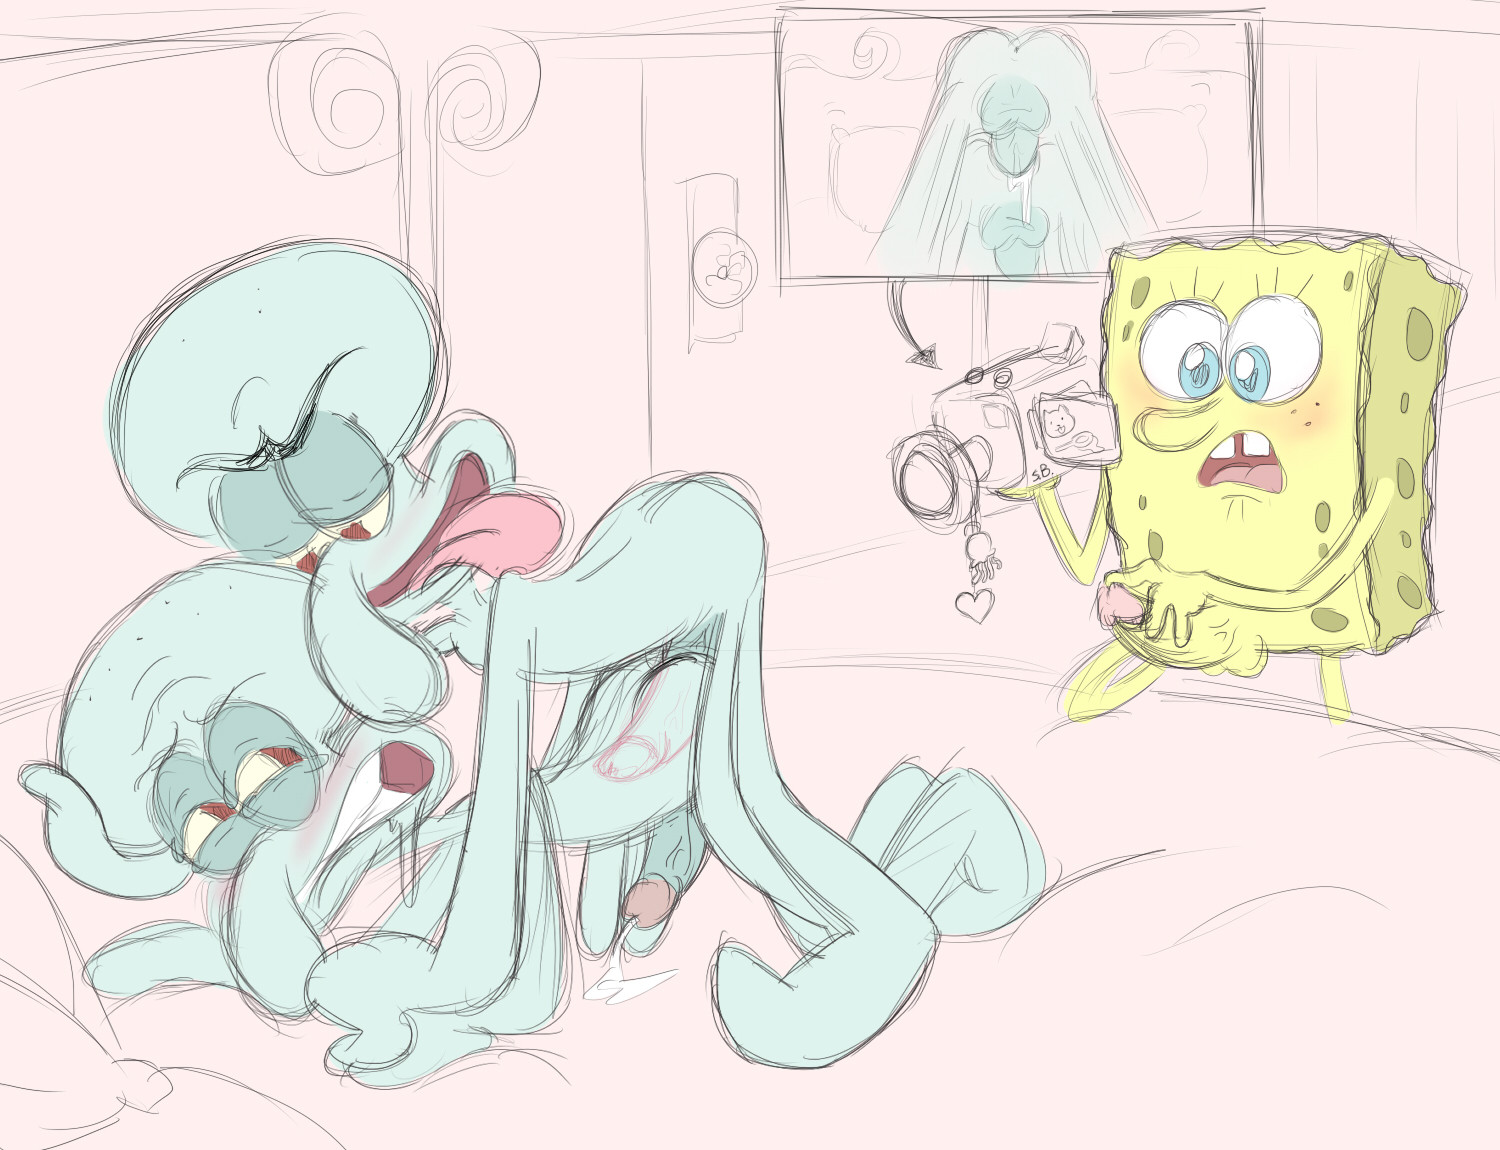 spongebob gay spongebob gay porn spongebob and plankton gay porn squidward ...